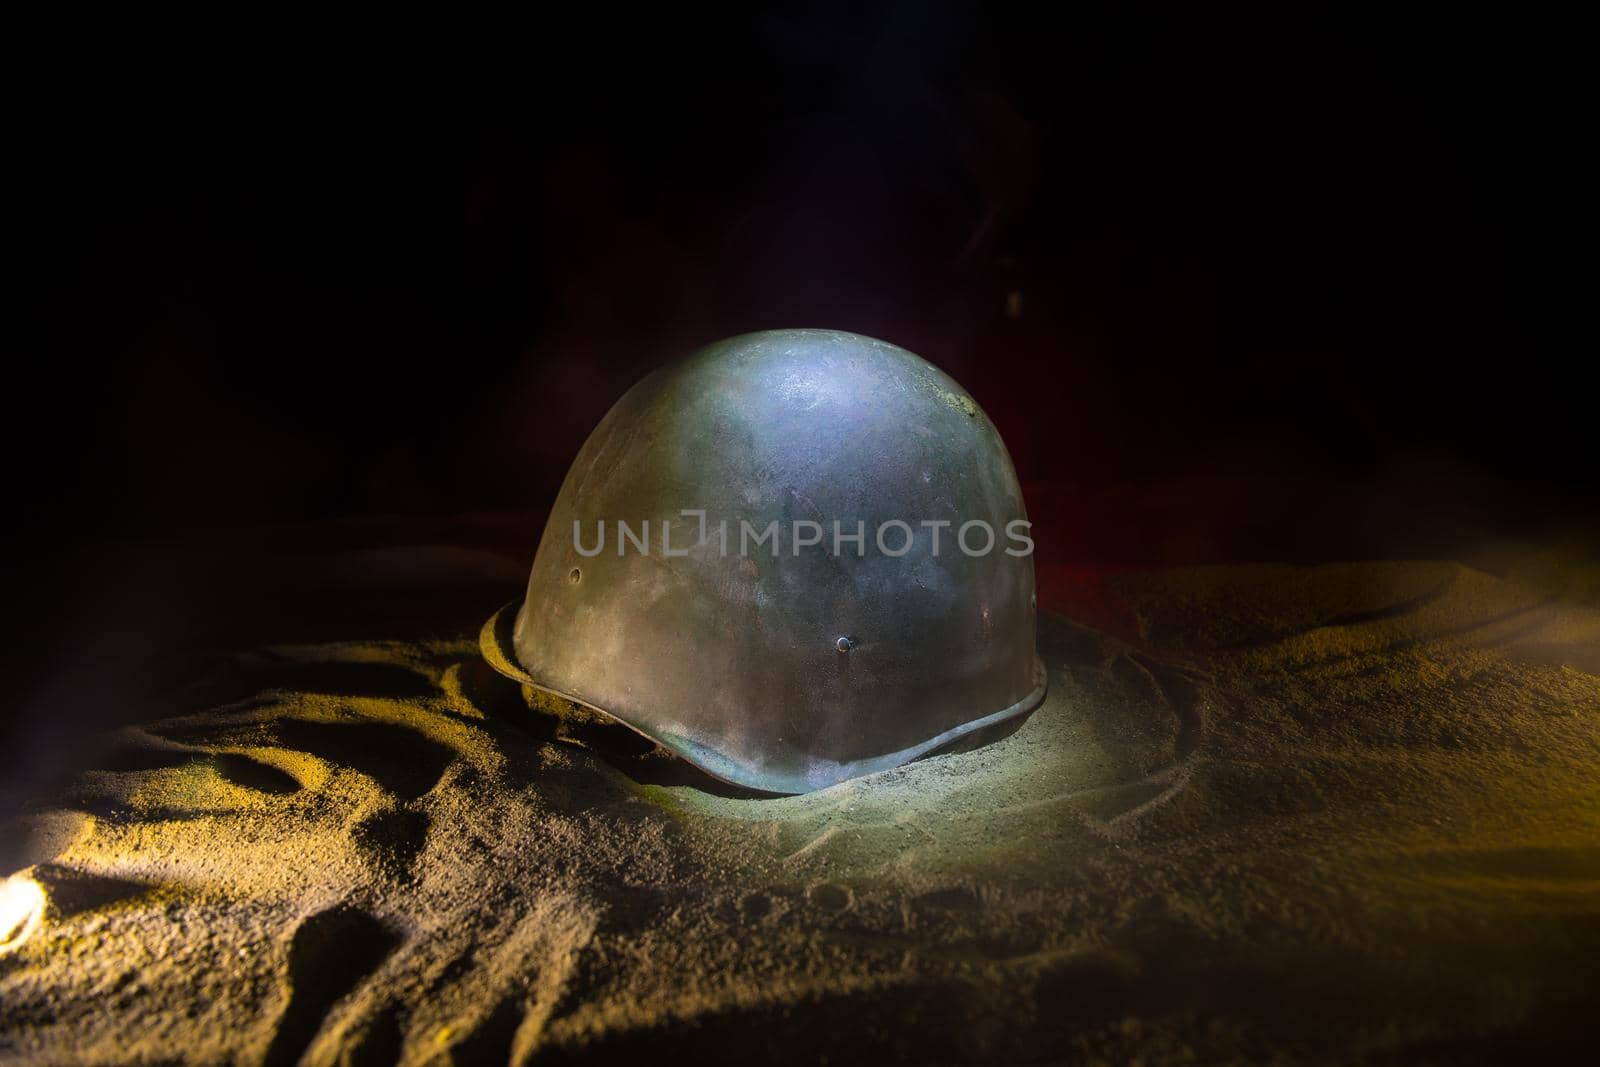 Soviet army Helmet Second World War in dark. Selective focus by Zeferli